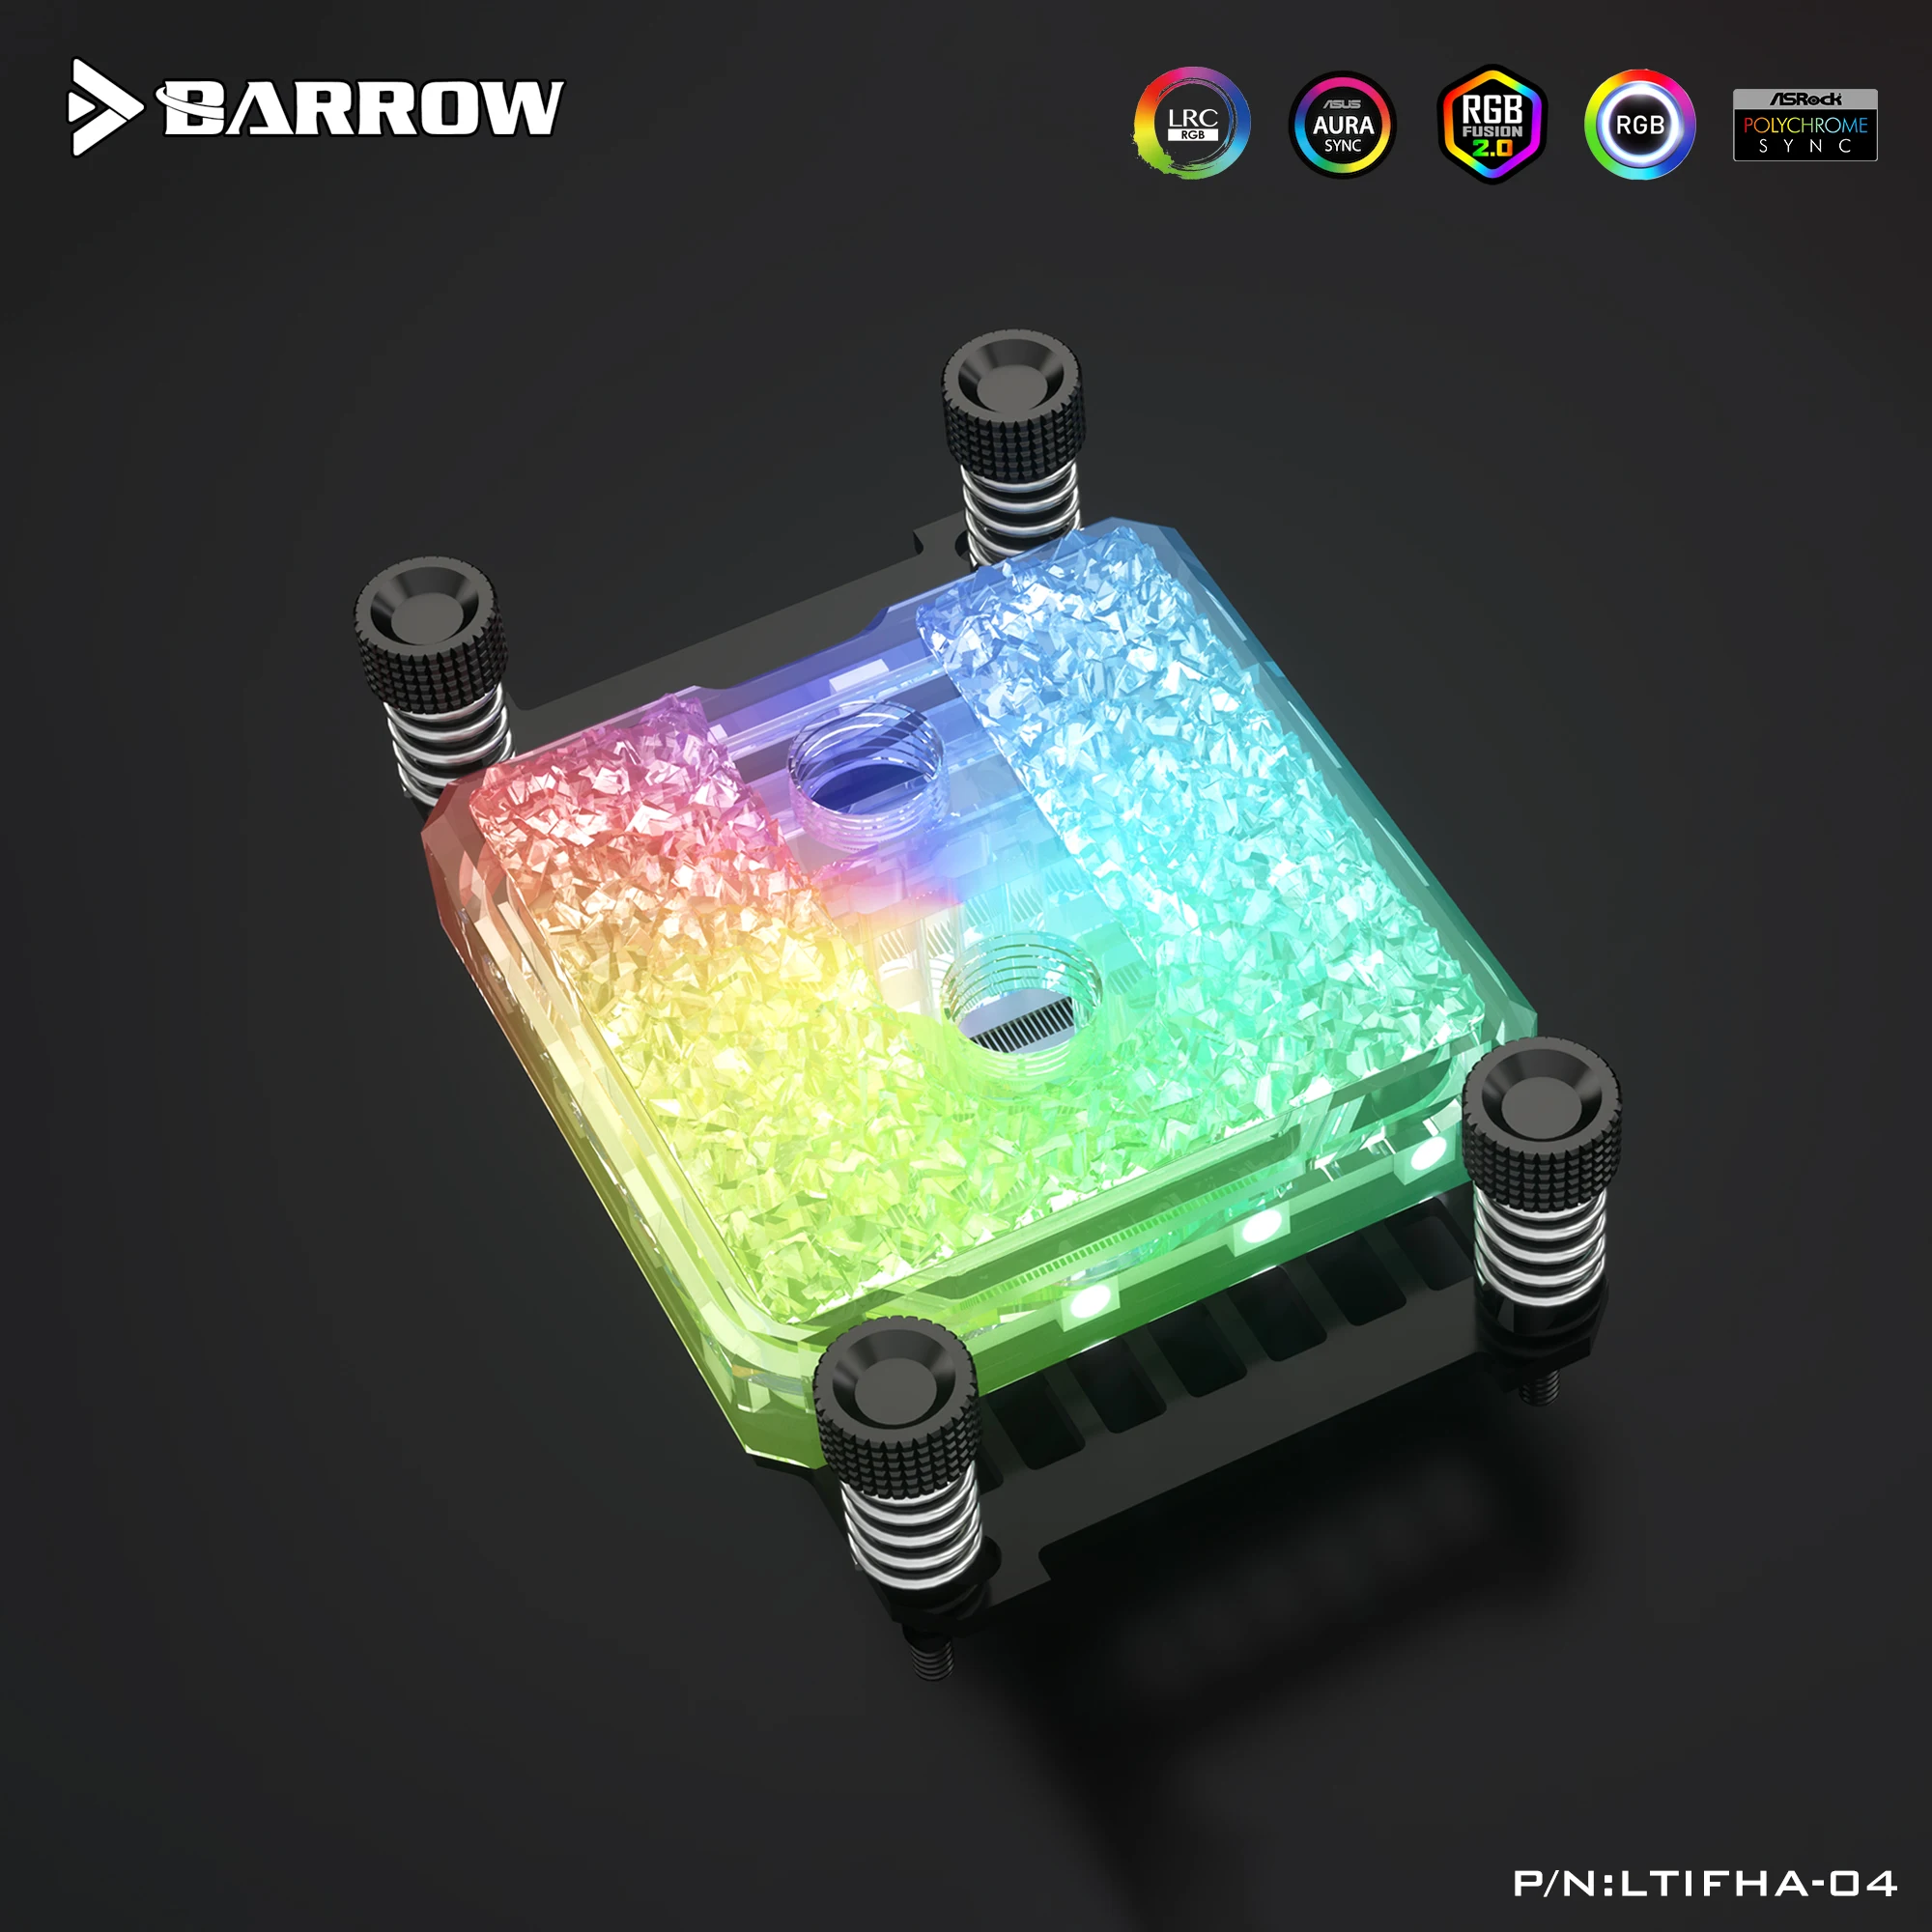 

Barrow CPU Water Block For Ryzen AMD AM4/AM3+/AM3/FM2 Platform 5V 3PIN Light Header,AM4 Processor Copper Cooler,LTIFHA-04